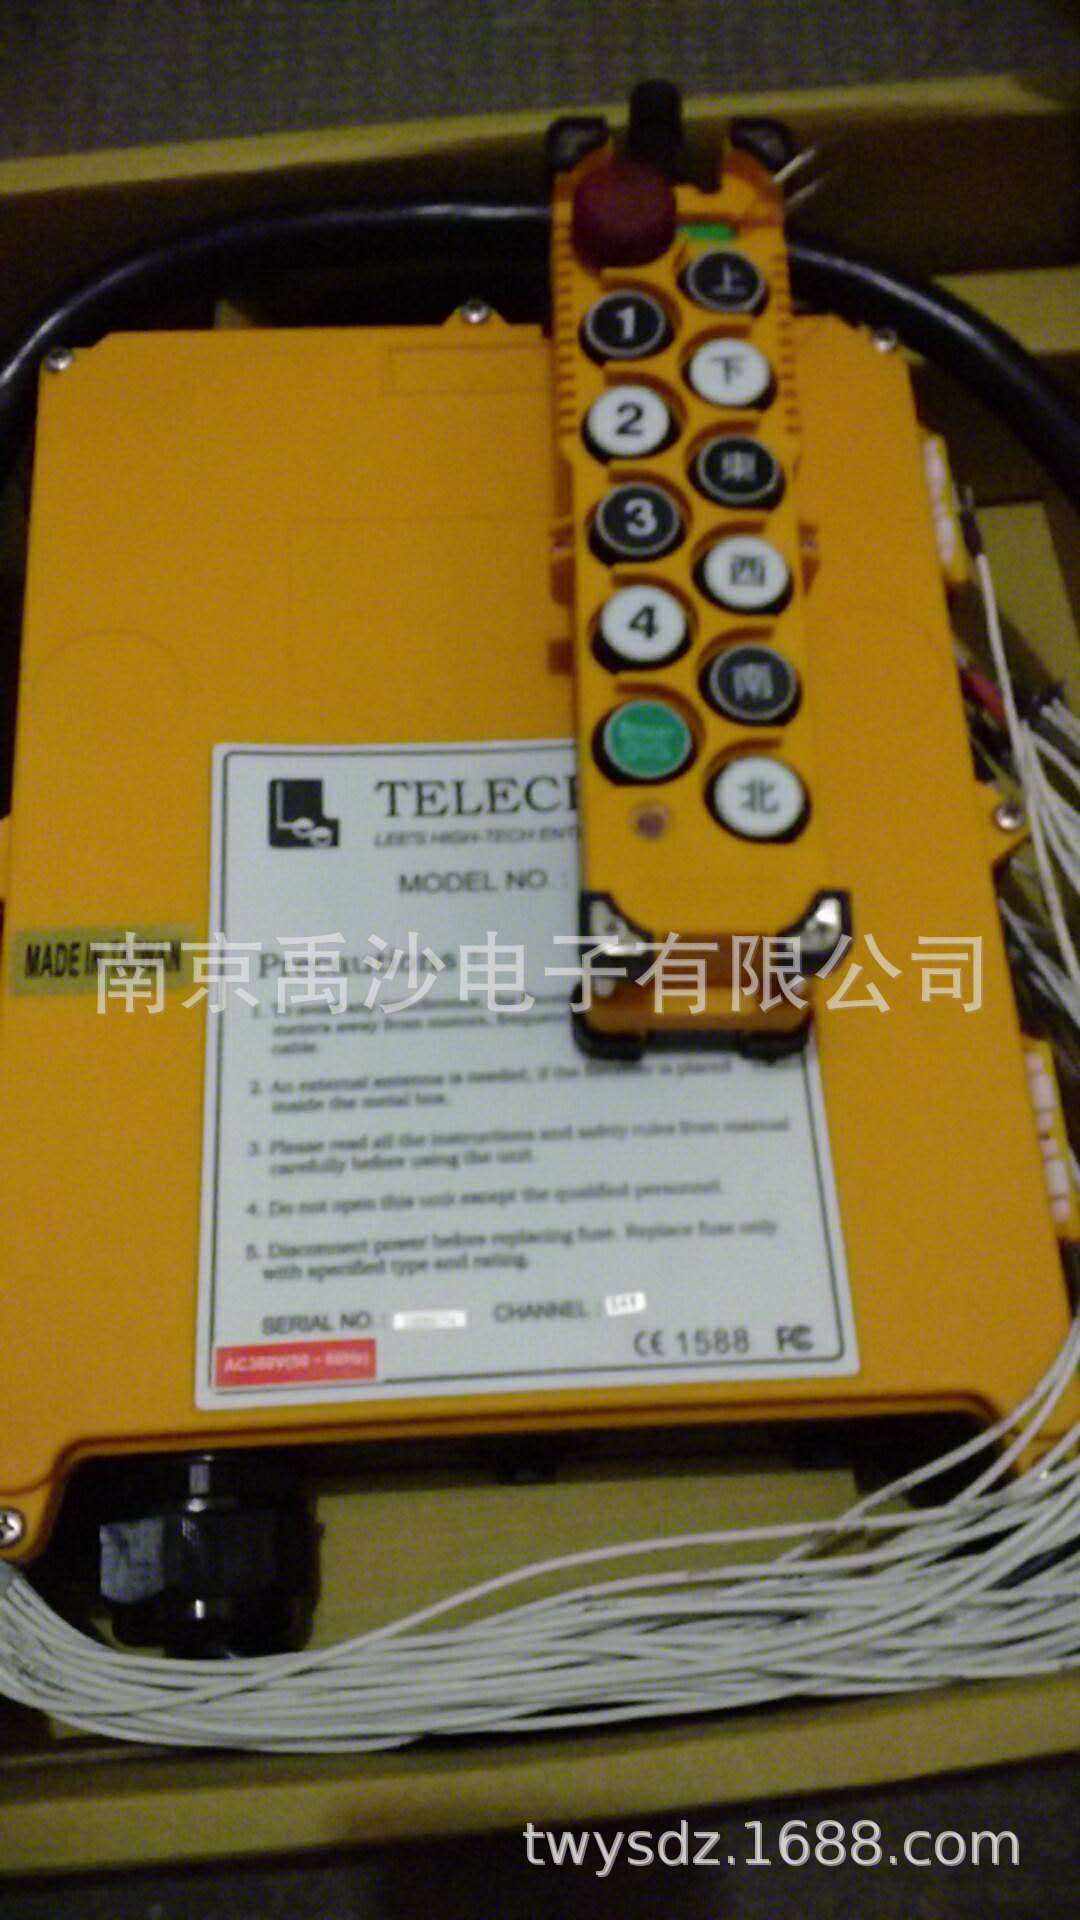 是否进口 否 品牌 telecrane 禹鼎 型号 f23-6s/2d 类型 无线遥控